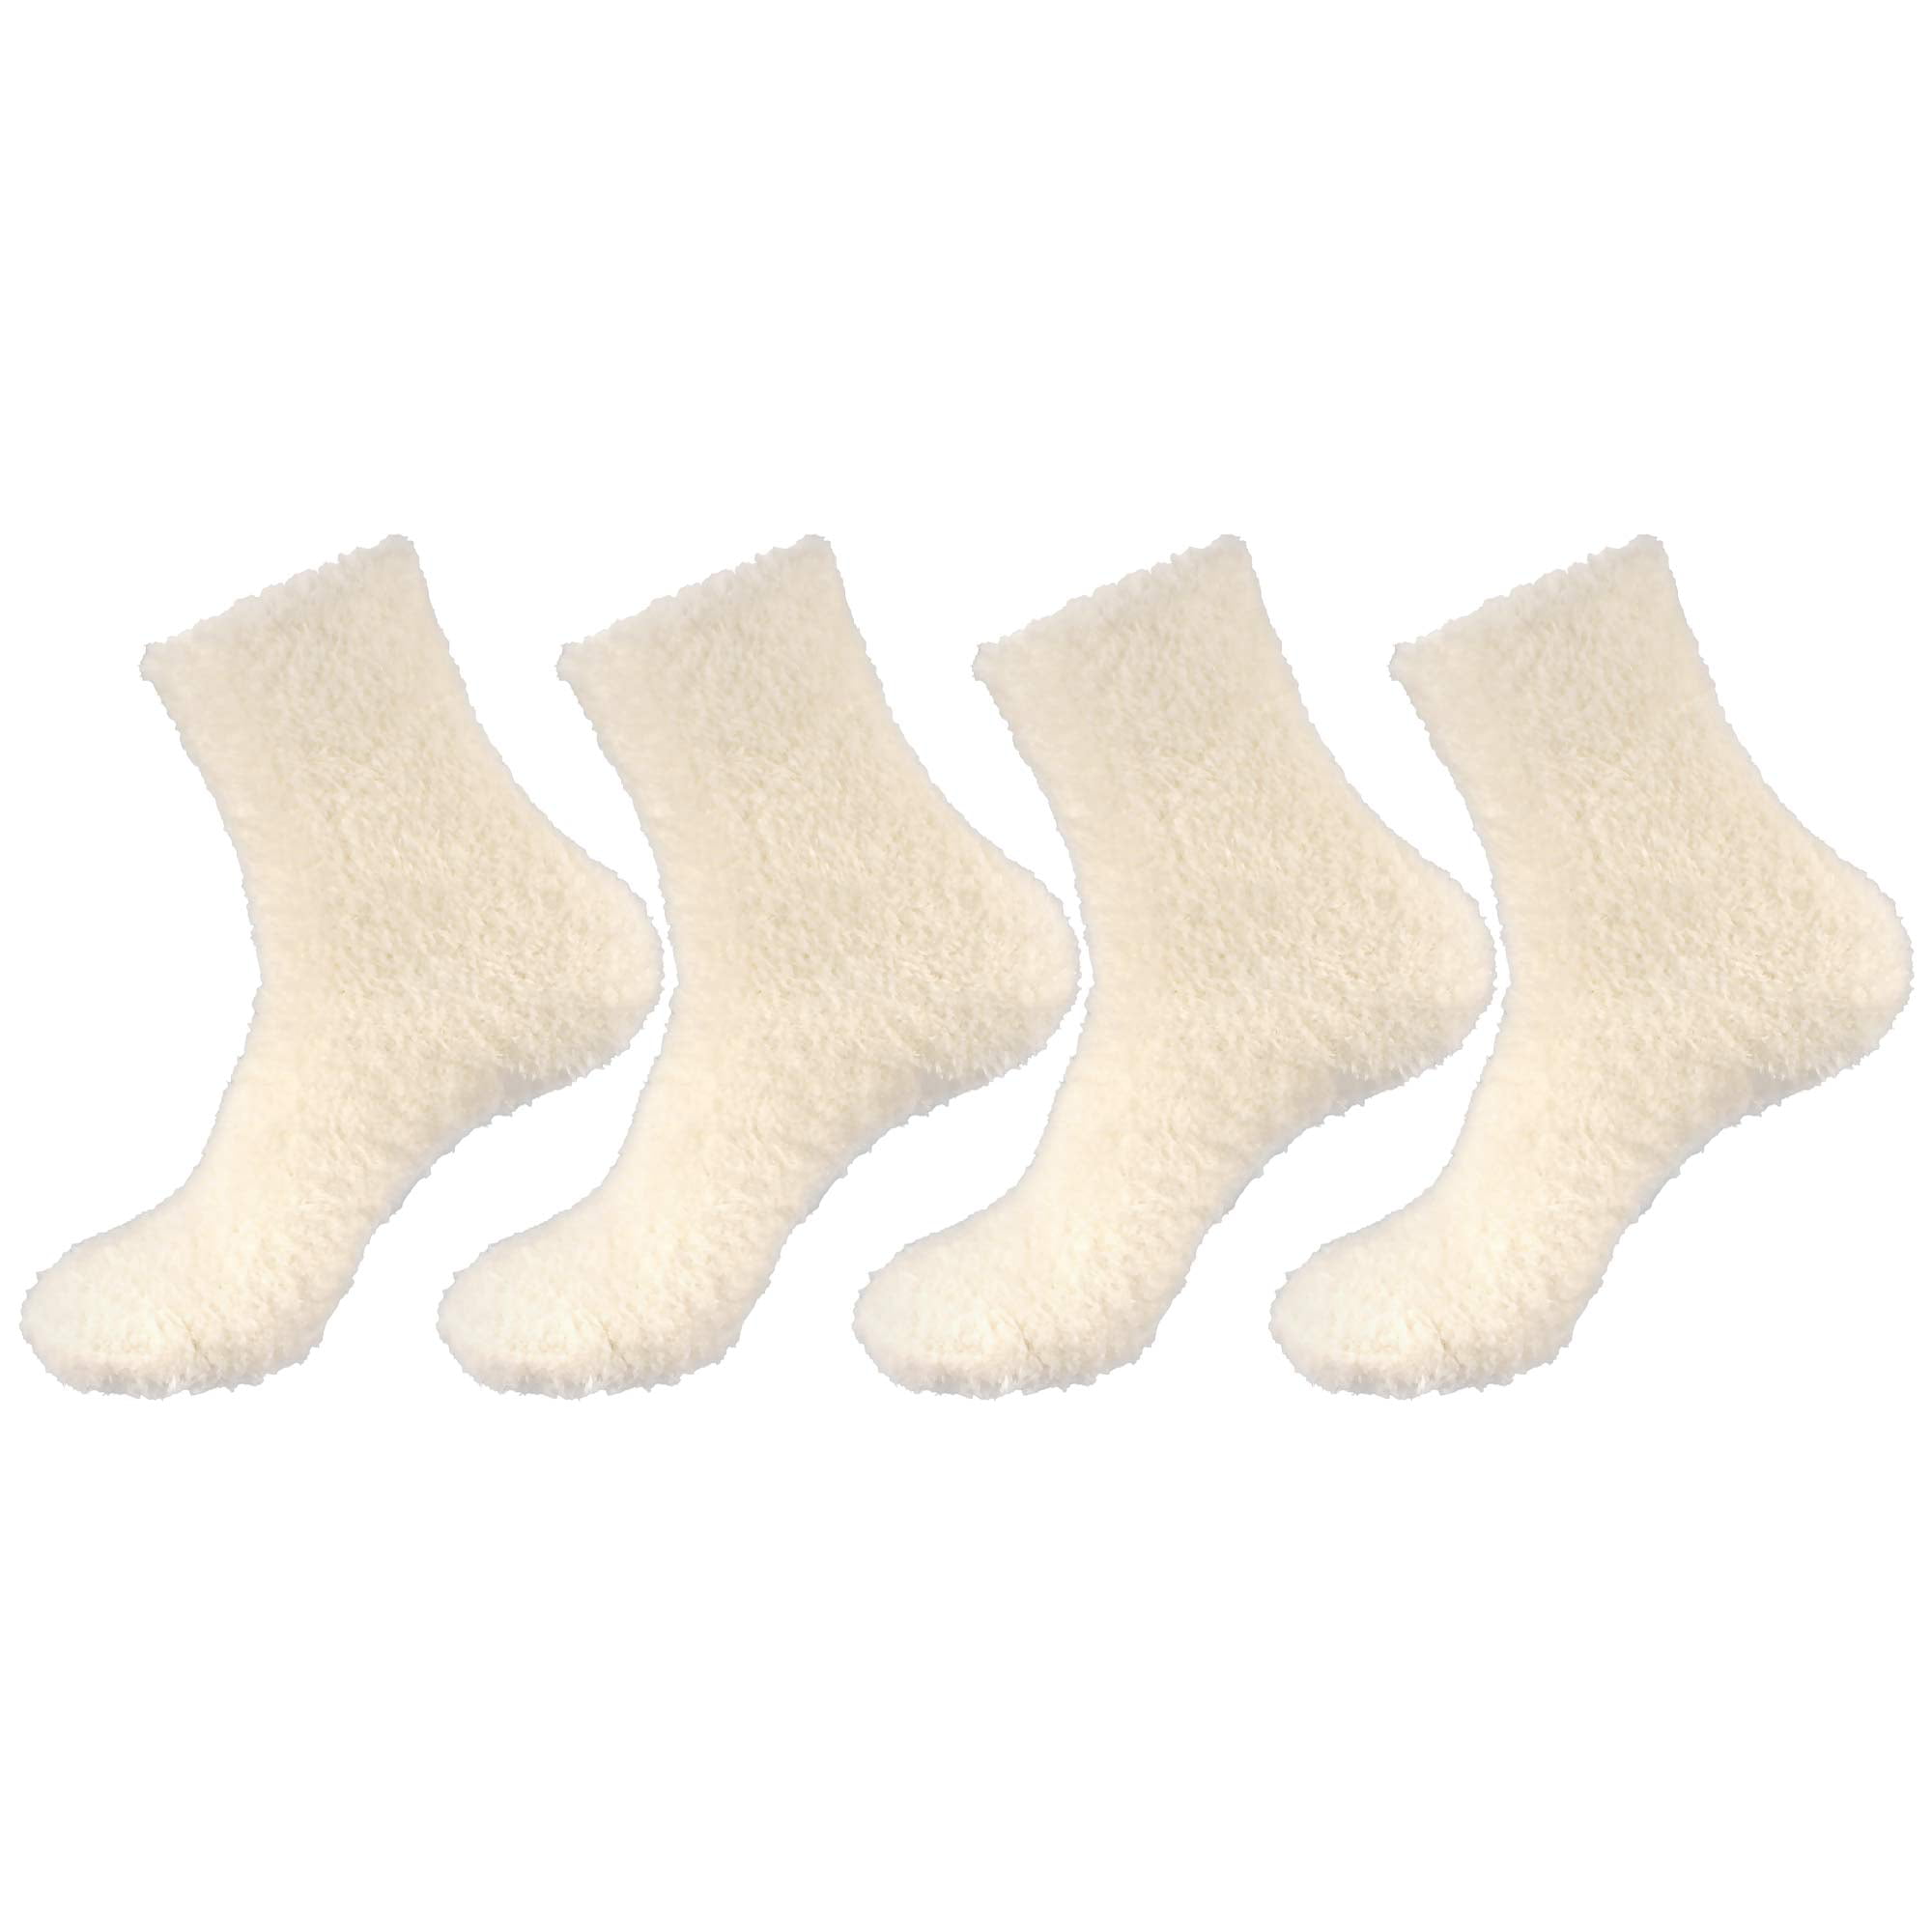 Fluffy Red Toes BRAND NEW RRP £7 Ladies Topshop Socks 2 Pairs Reindeer Pattern